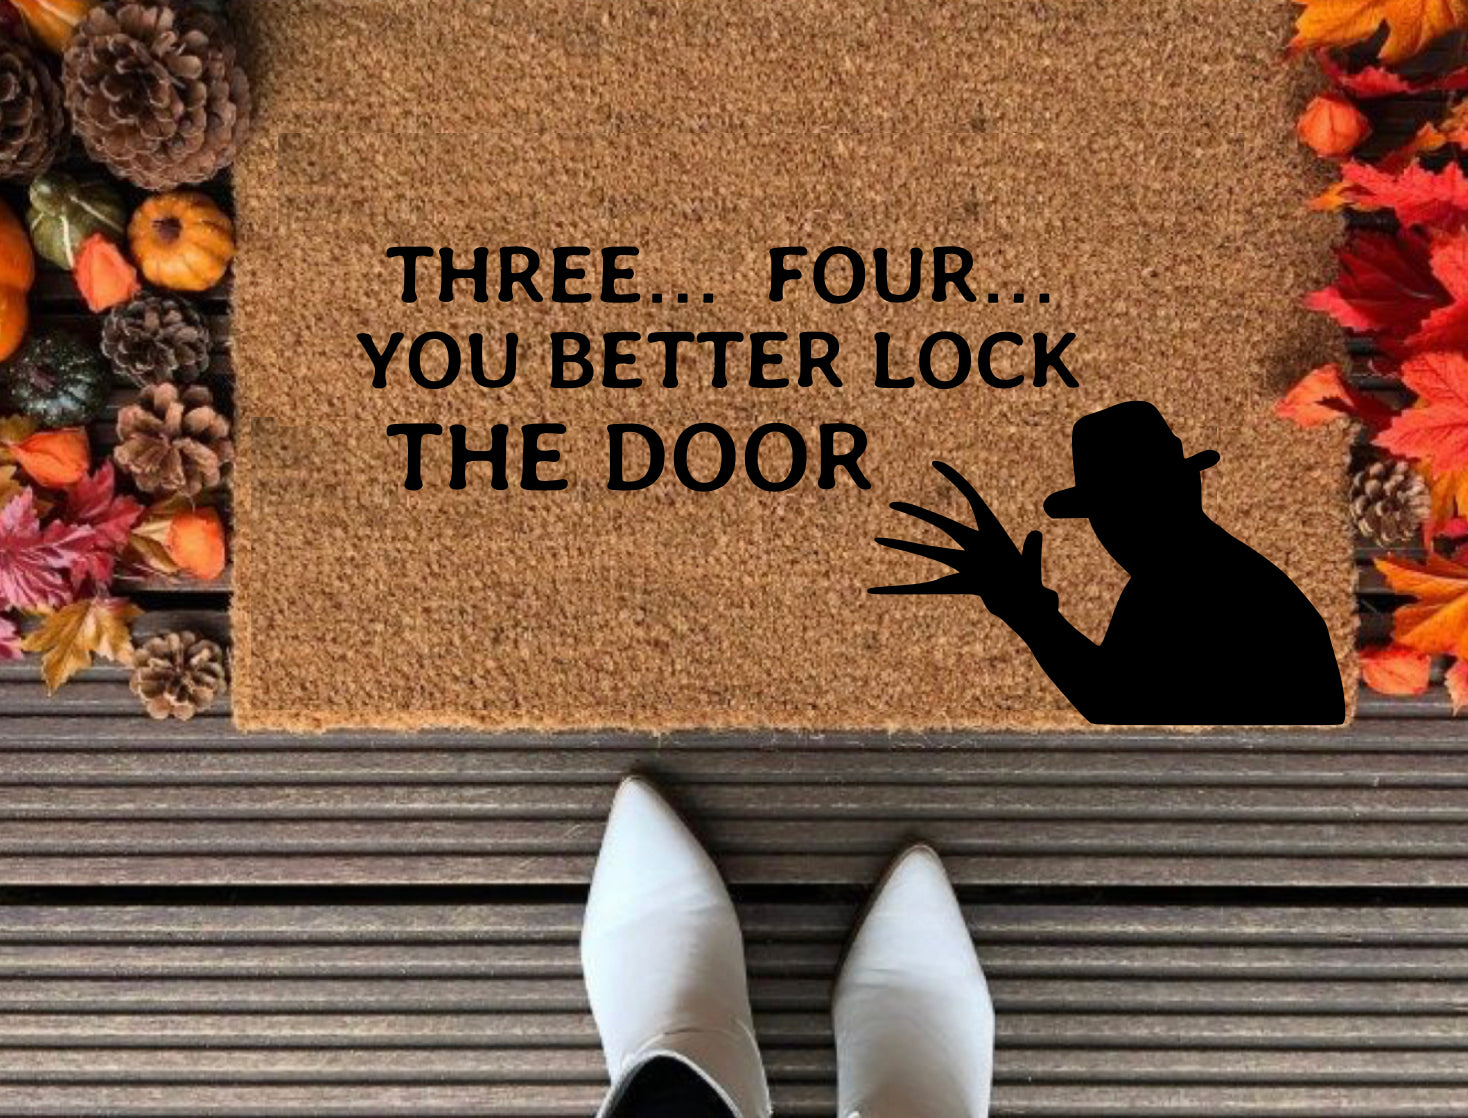 (Freddy Krueger) Three, Four, Better Lock Your Door